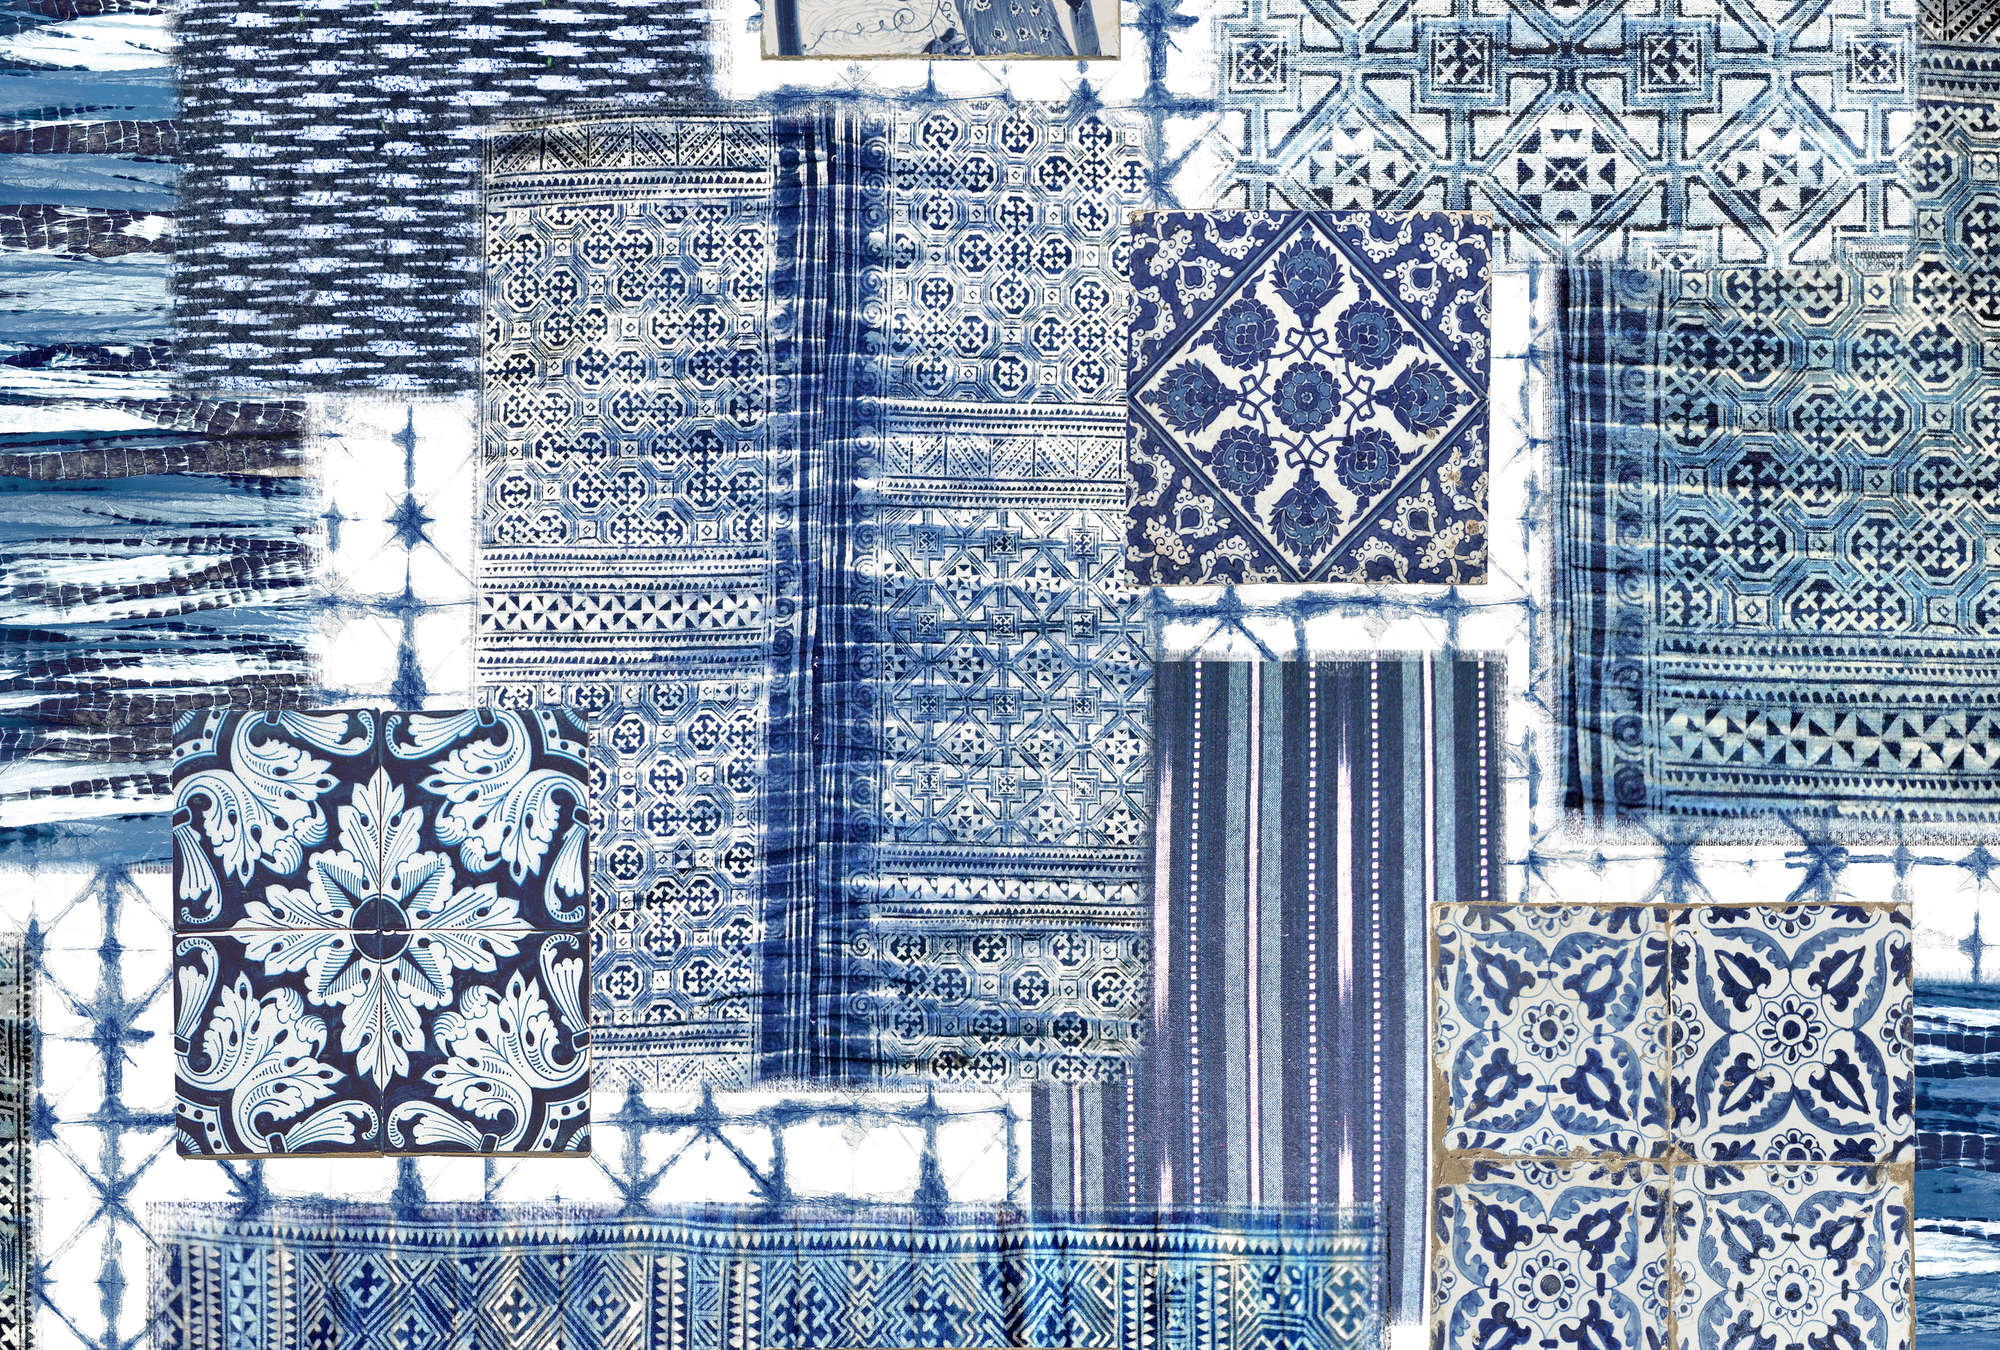             Papier peint patchwork, carreaux de Delft & à motifs - bleu, blanc
        